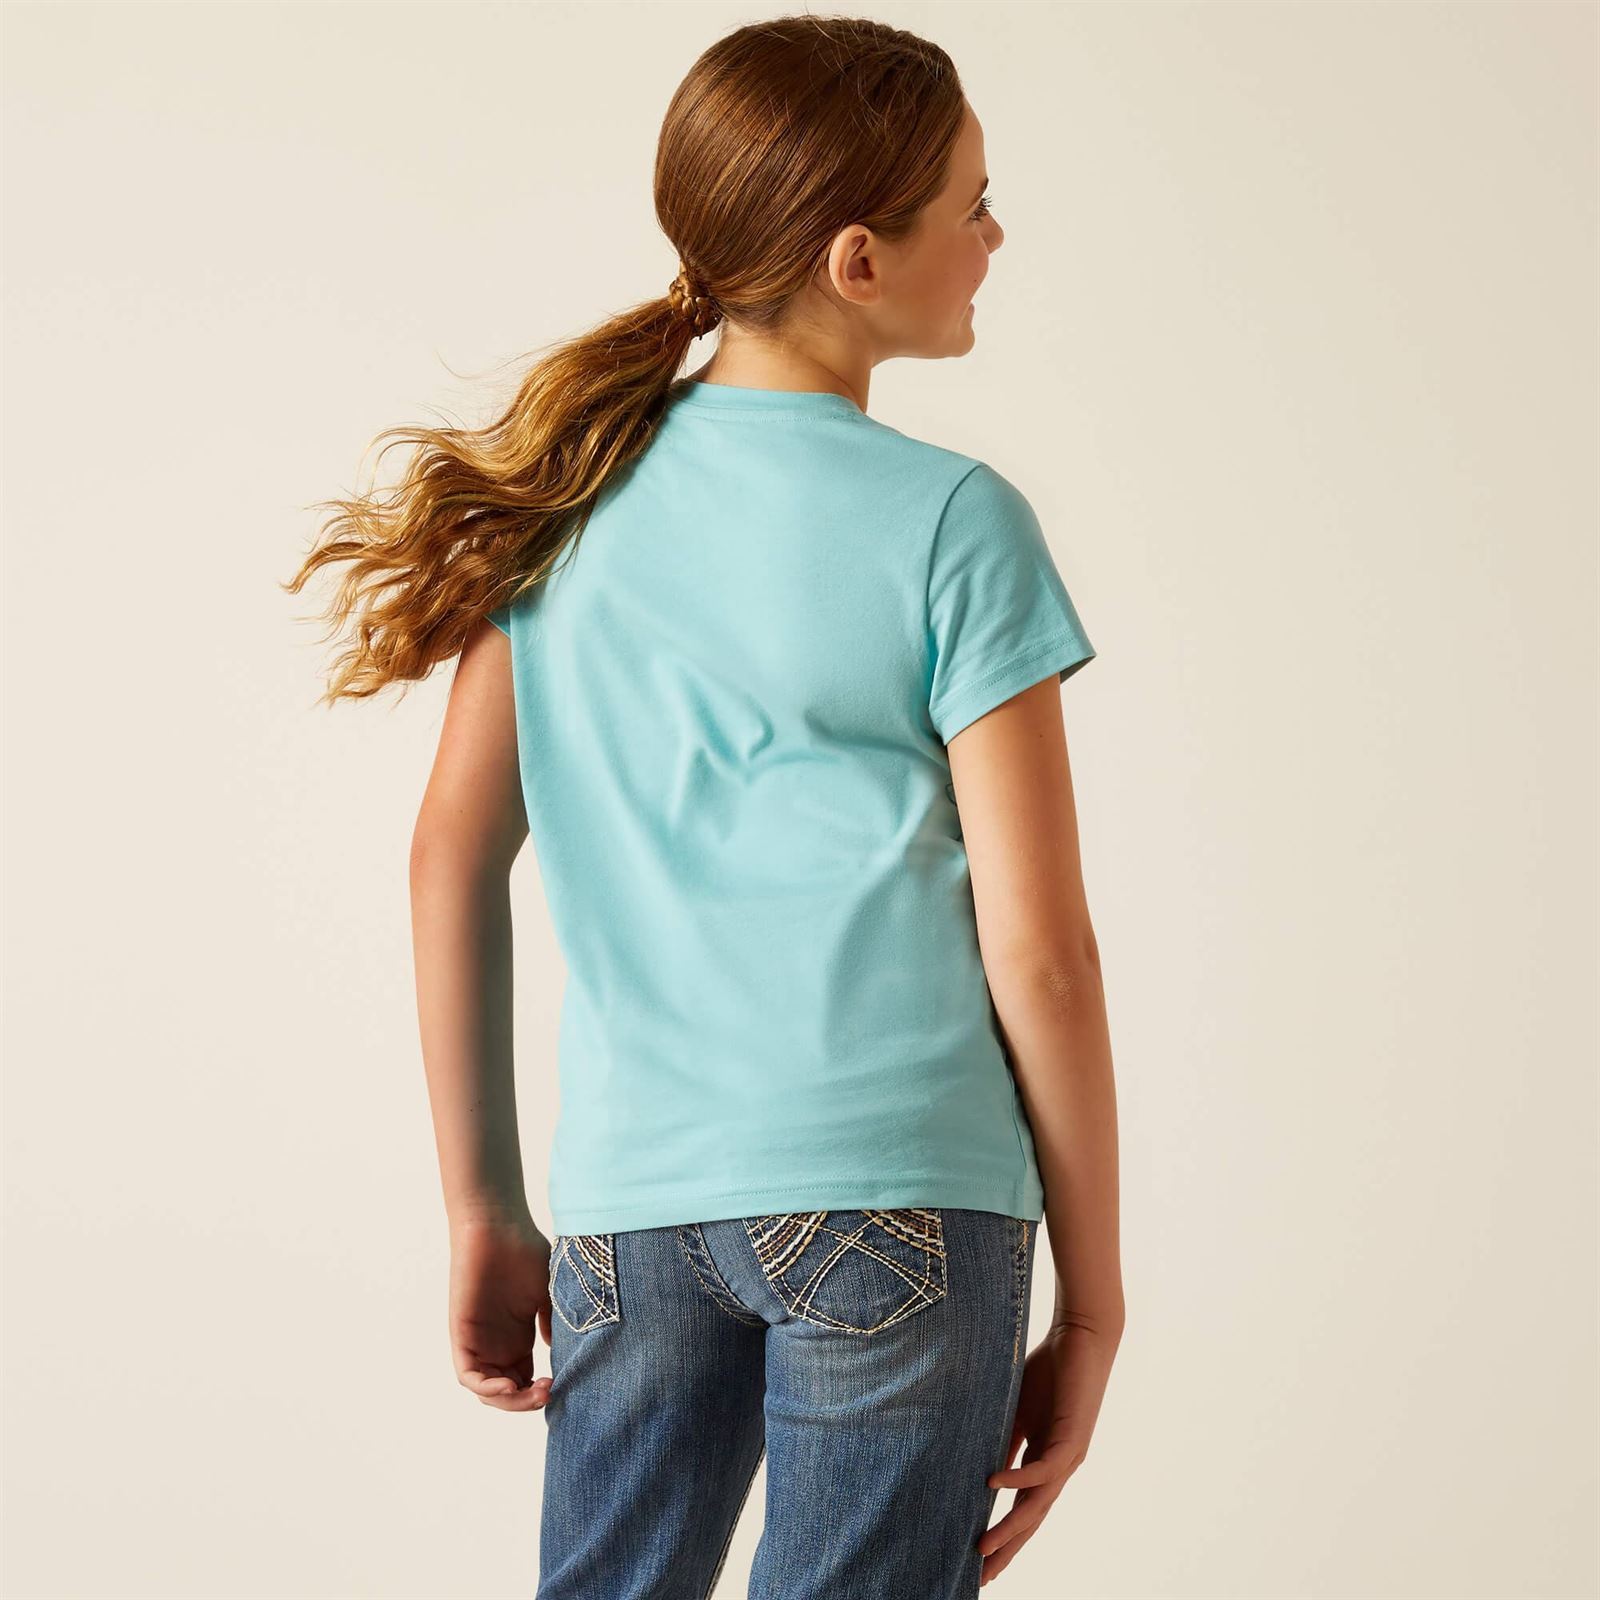 Camiseta Ariat niña Little Friend color azul turquesa caballo flores - Imagen 3